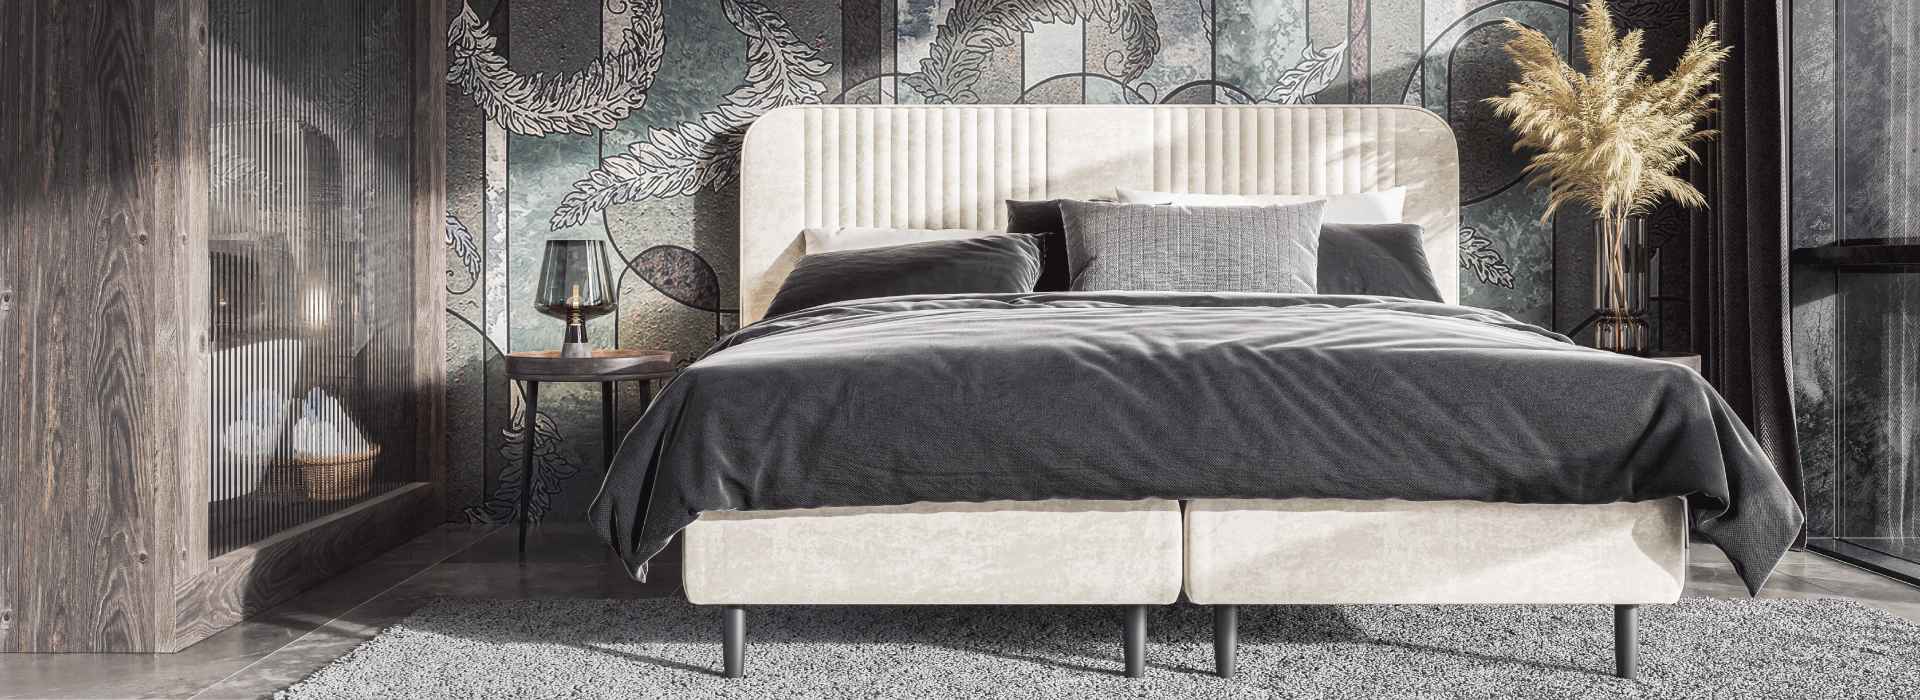 Jasnobeżowe łóżko z dekoracyjnymi przeszyciami na całości, ustawione w eleganckim pomieszczeniu w granatowe i złote barwy. Po obu stronach łóżka złote stoliki.